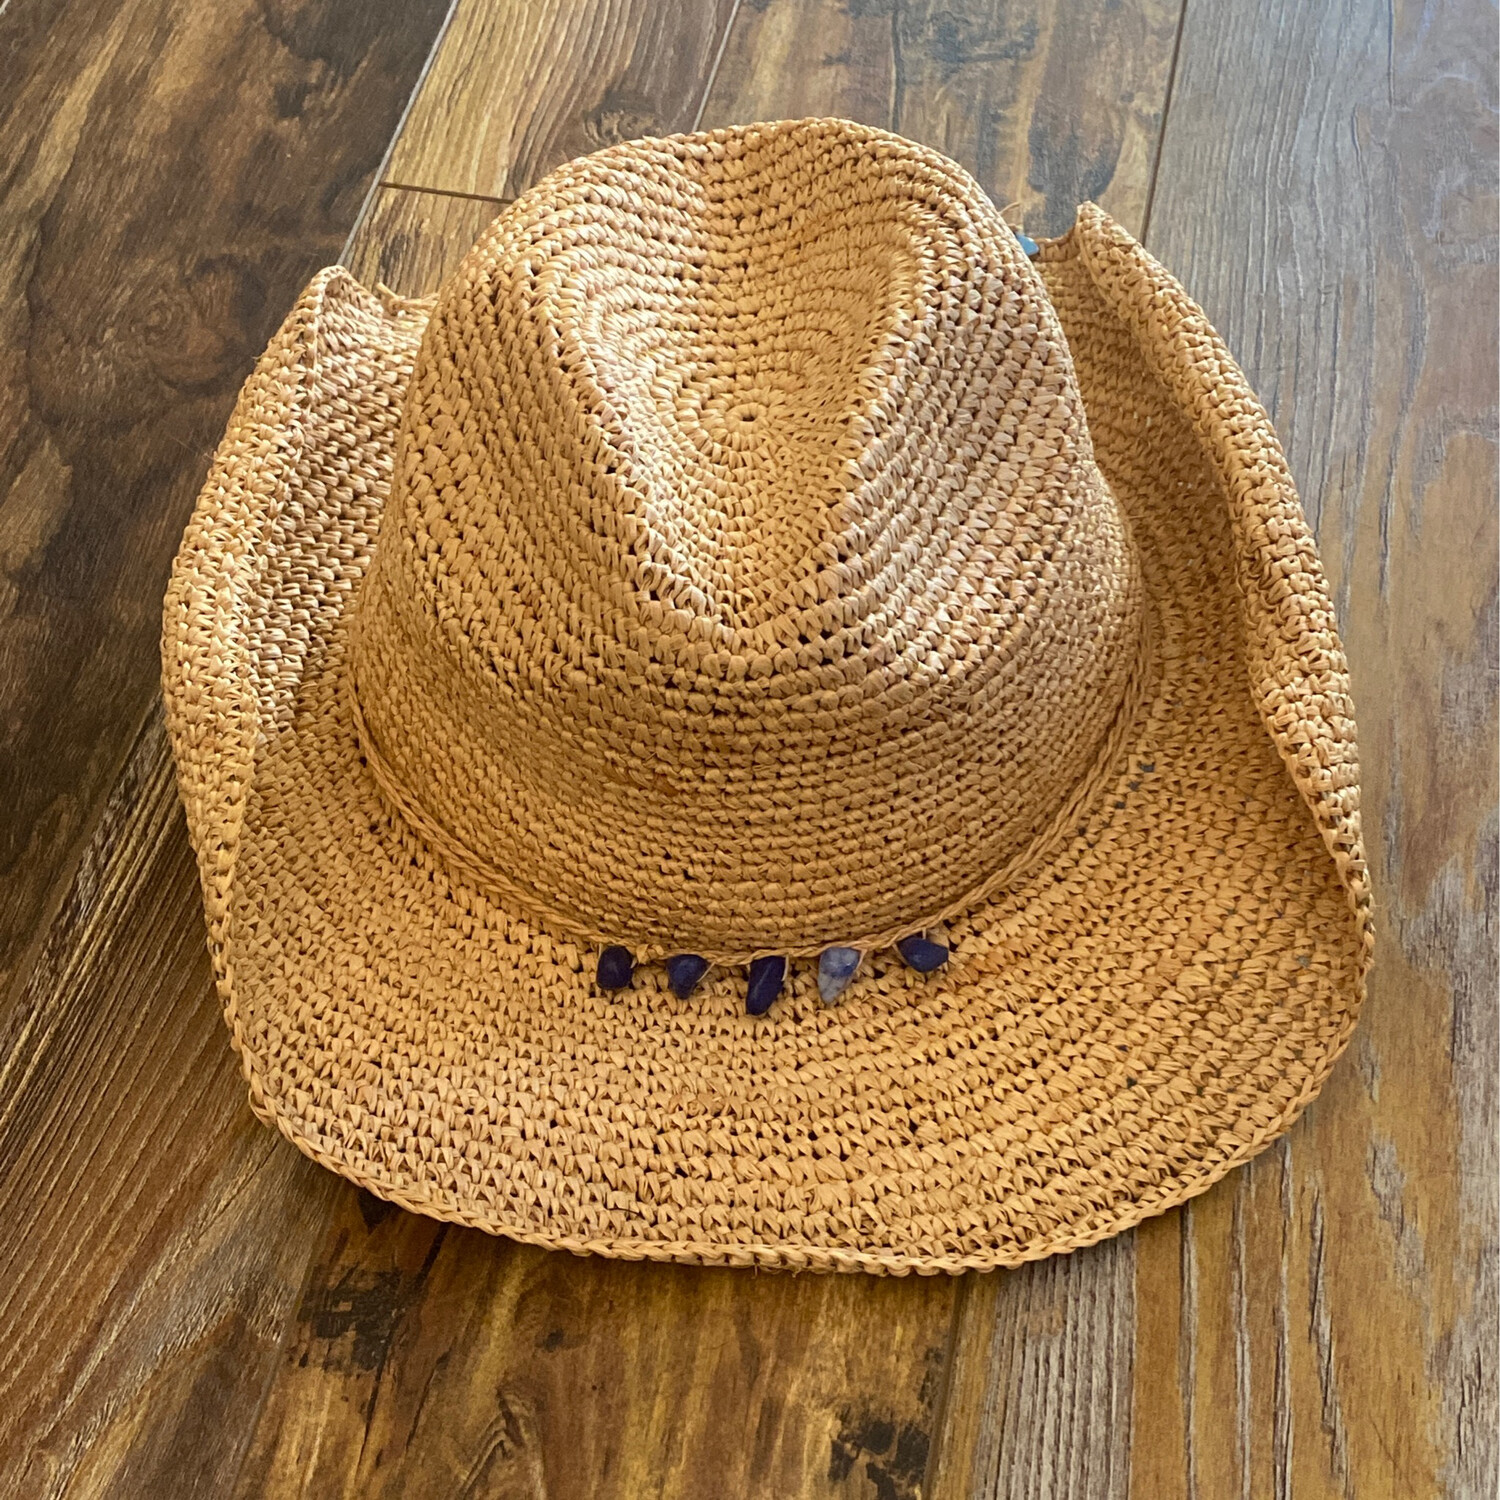 San Diego Hat Company Crocheted Raffia Cowboy Hat with Stone Trim (RHC1074) Cobalt